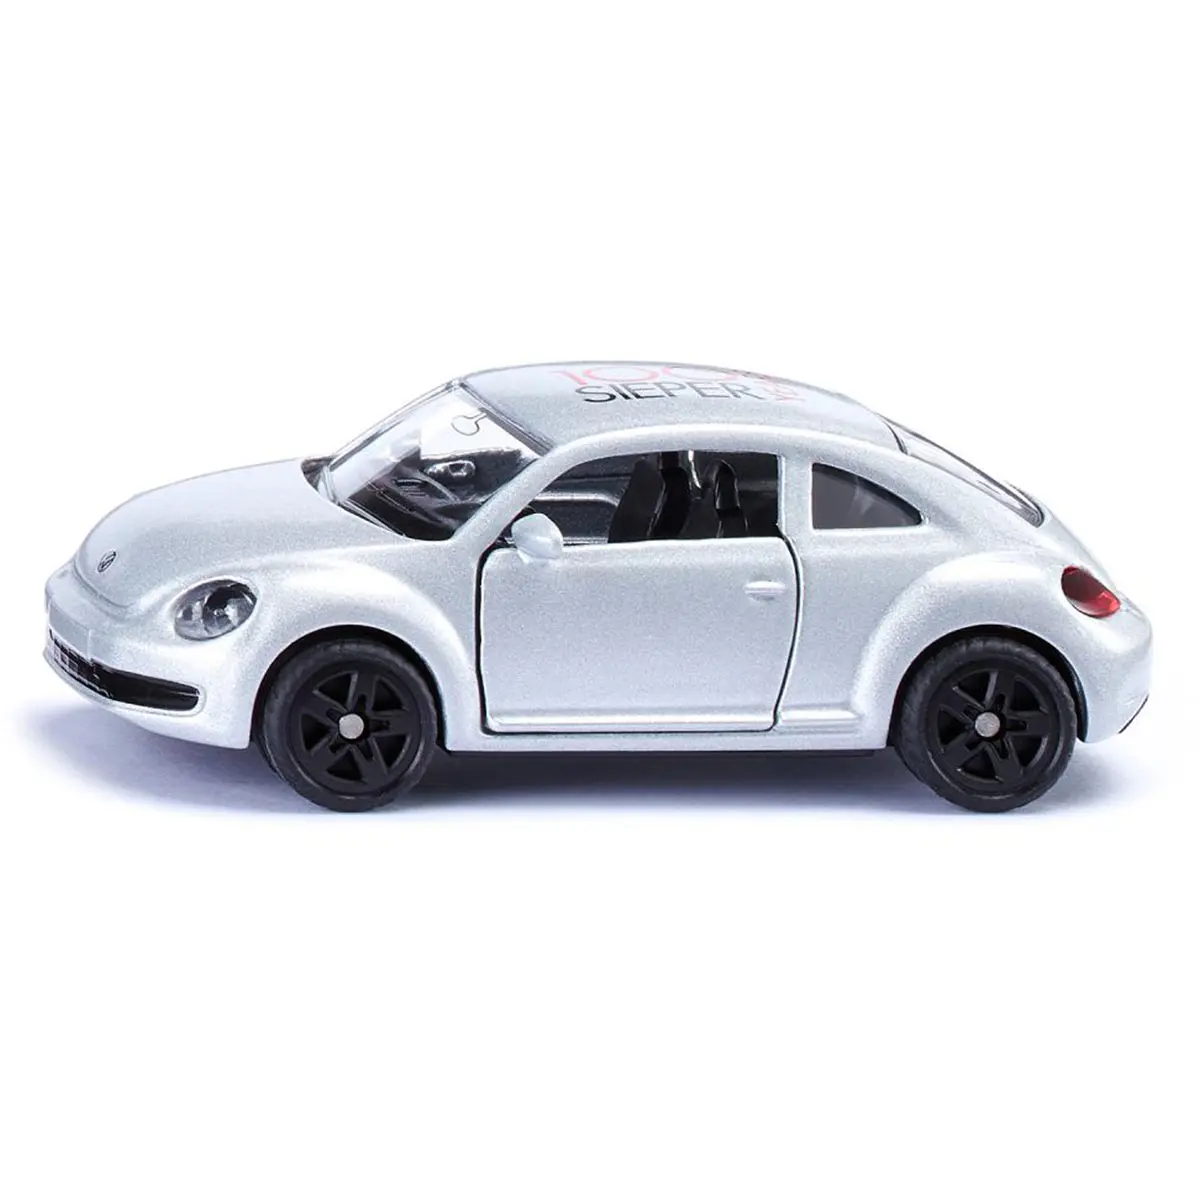 Машина юбилейная VW The Beetle - фото